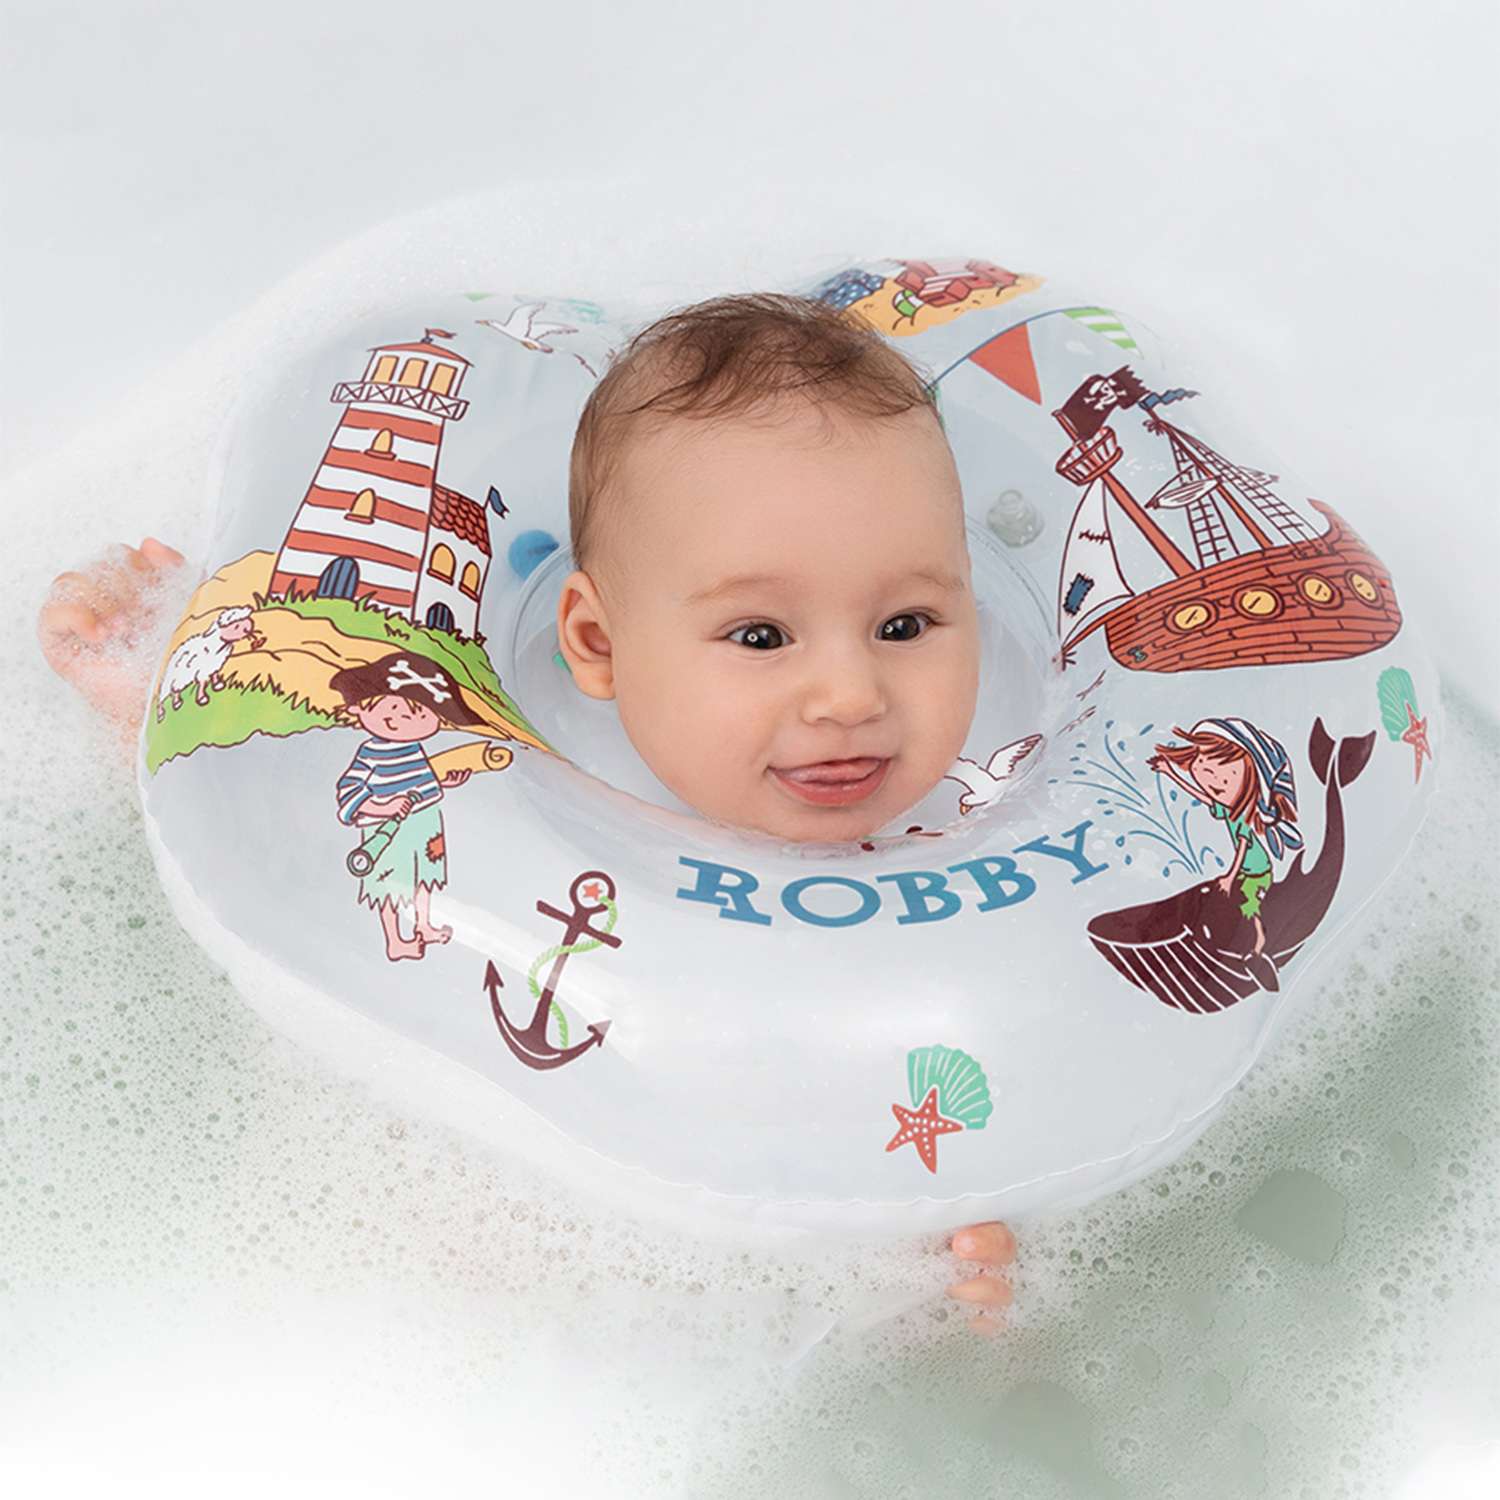 Круг для купания ROXY-KIDS надувной на шею для новорожденных и малышей Robby - фото 1